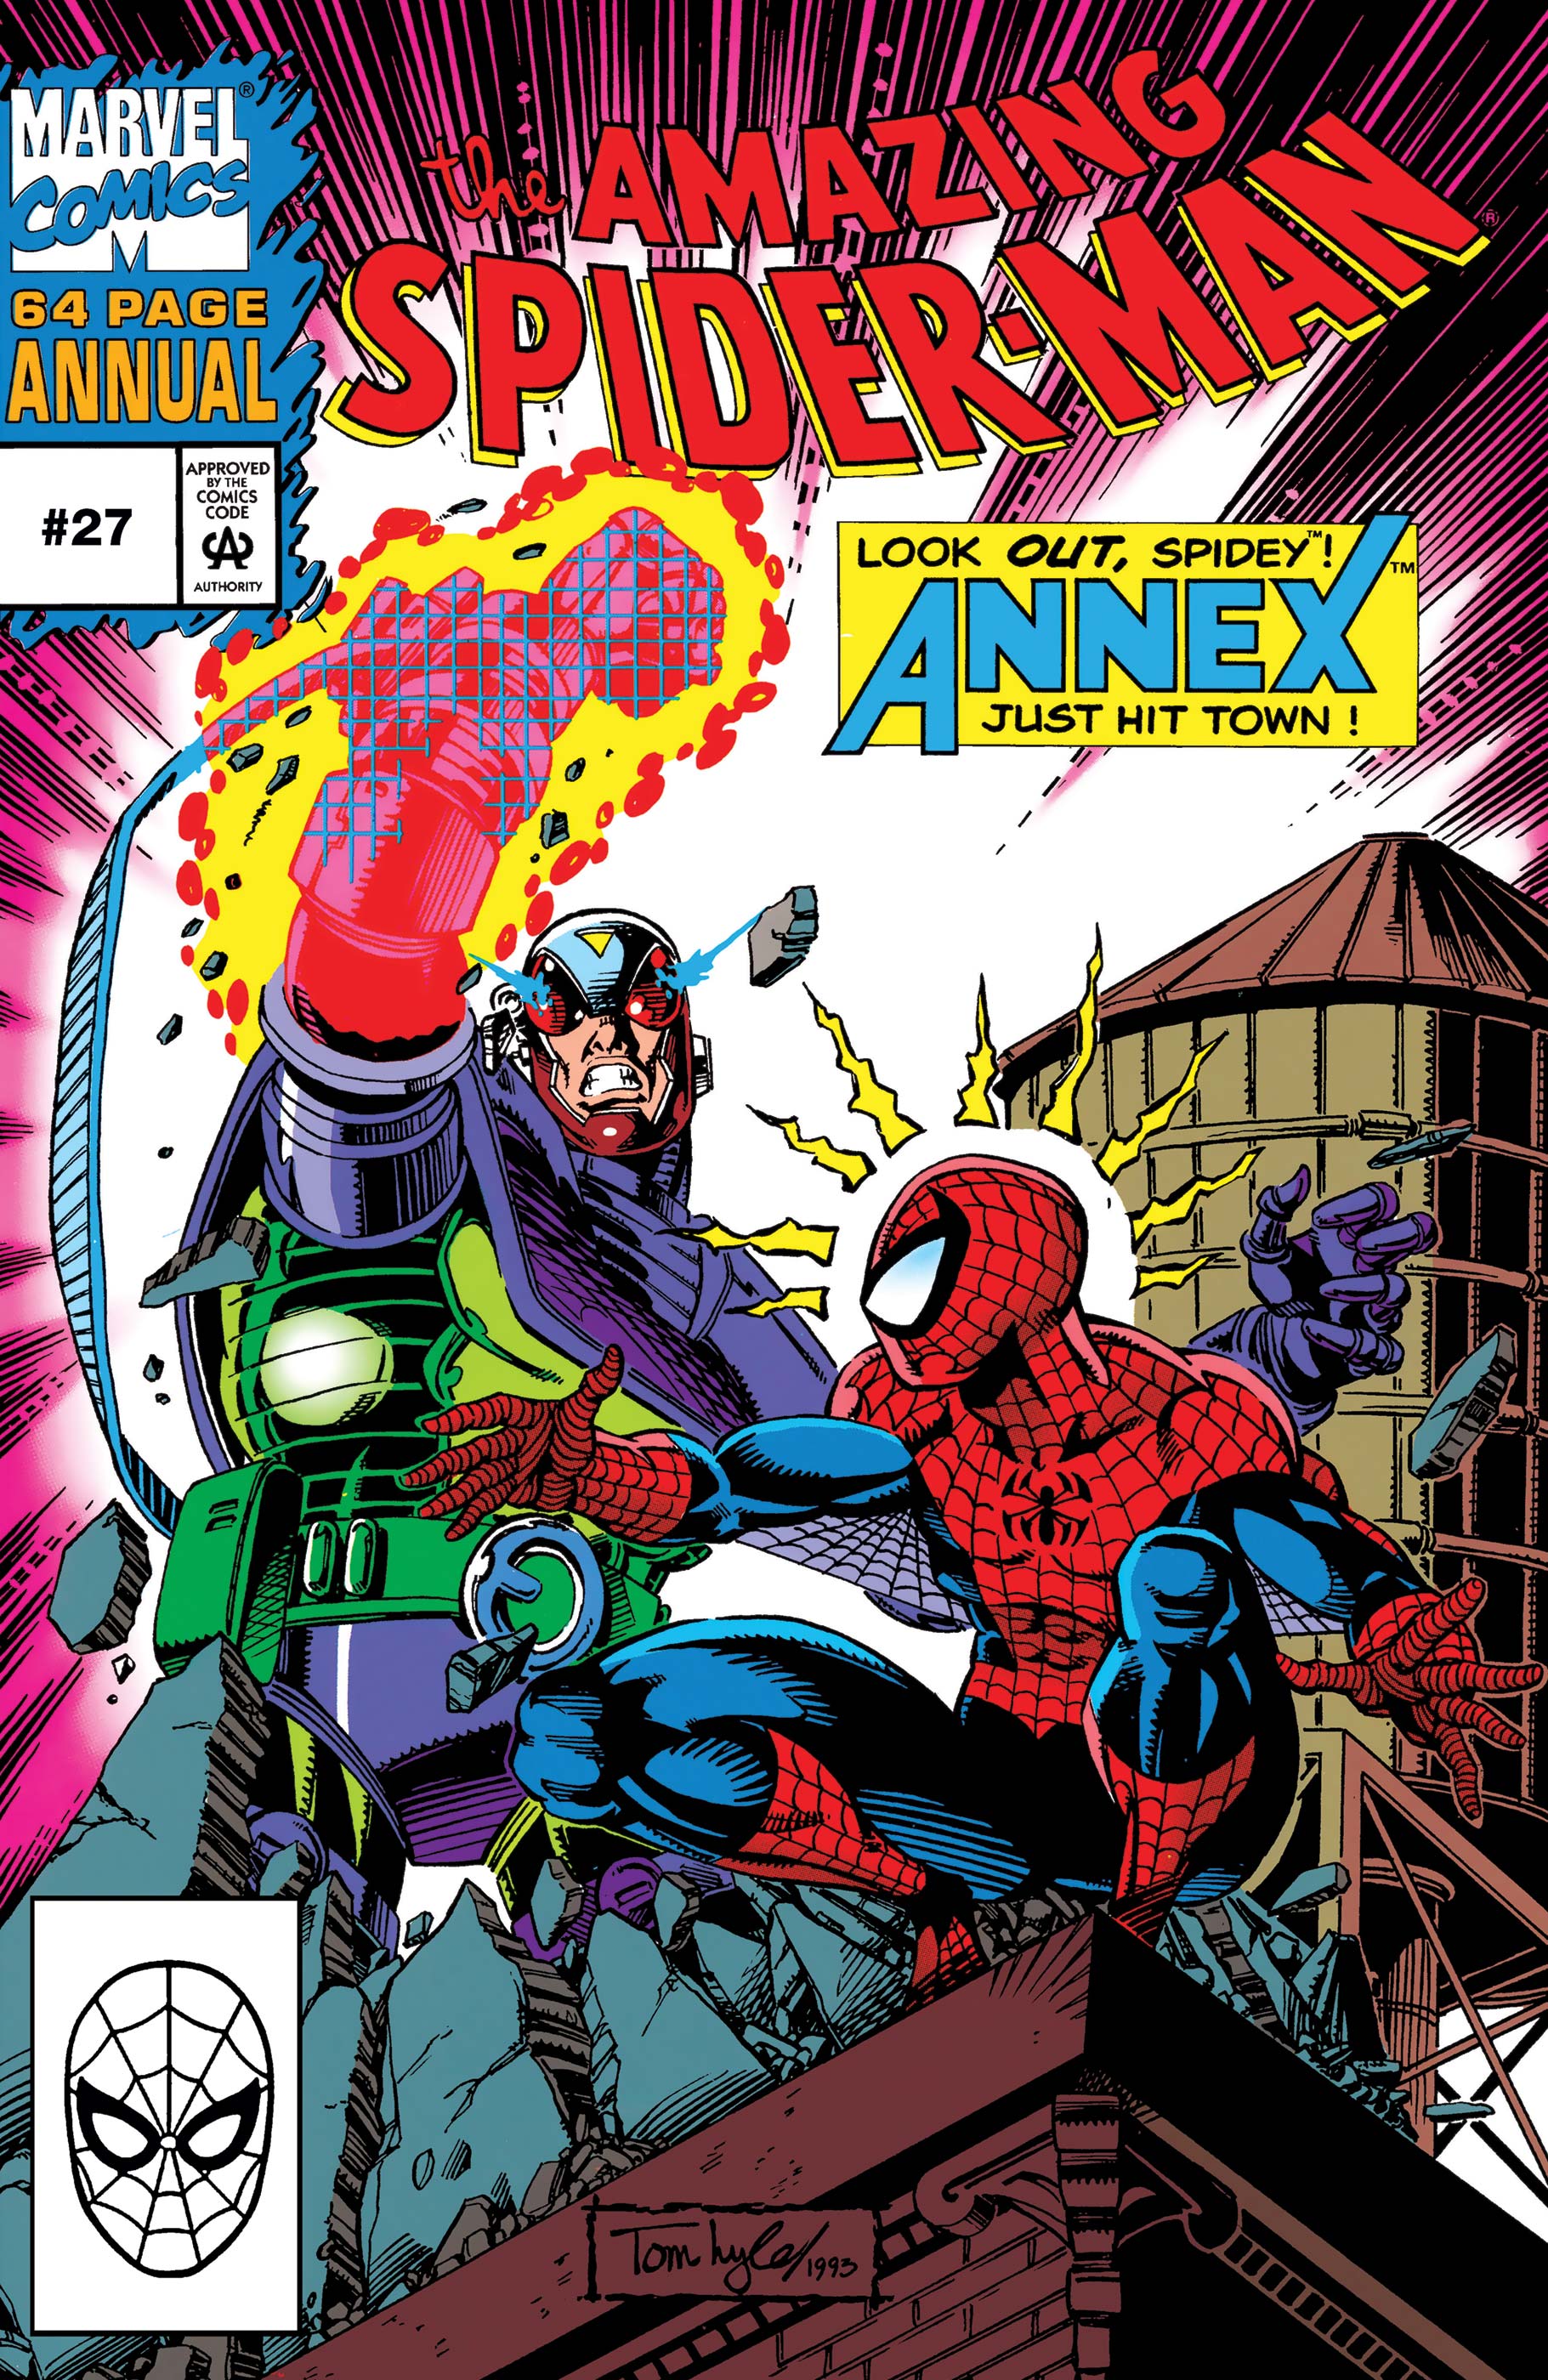 Amazing Spider-Man Annual (1964) #27